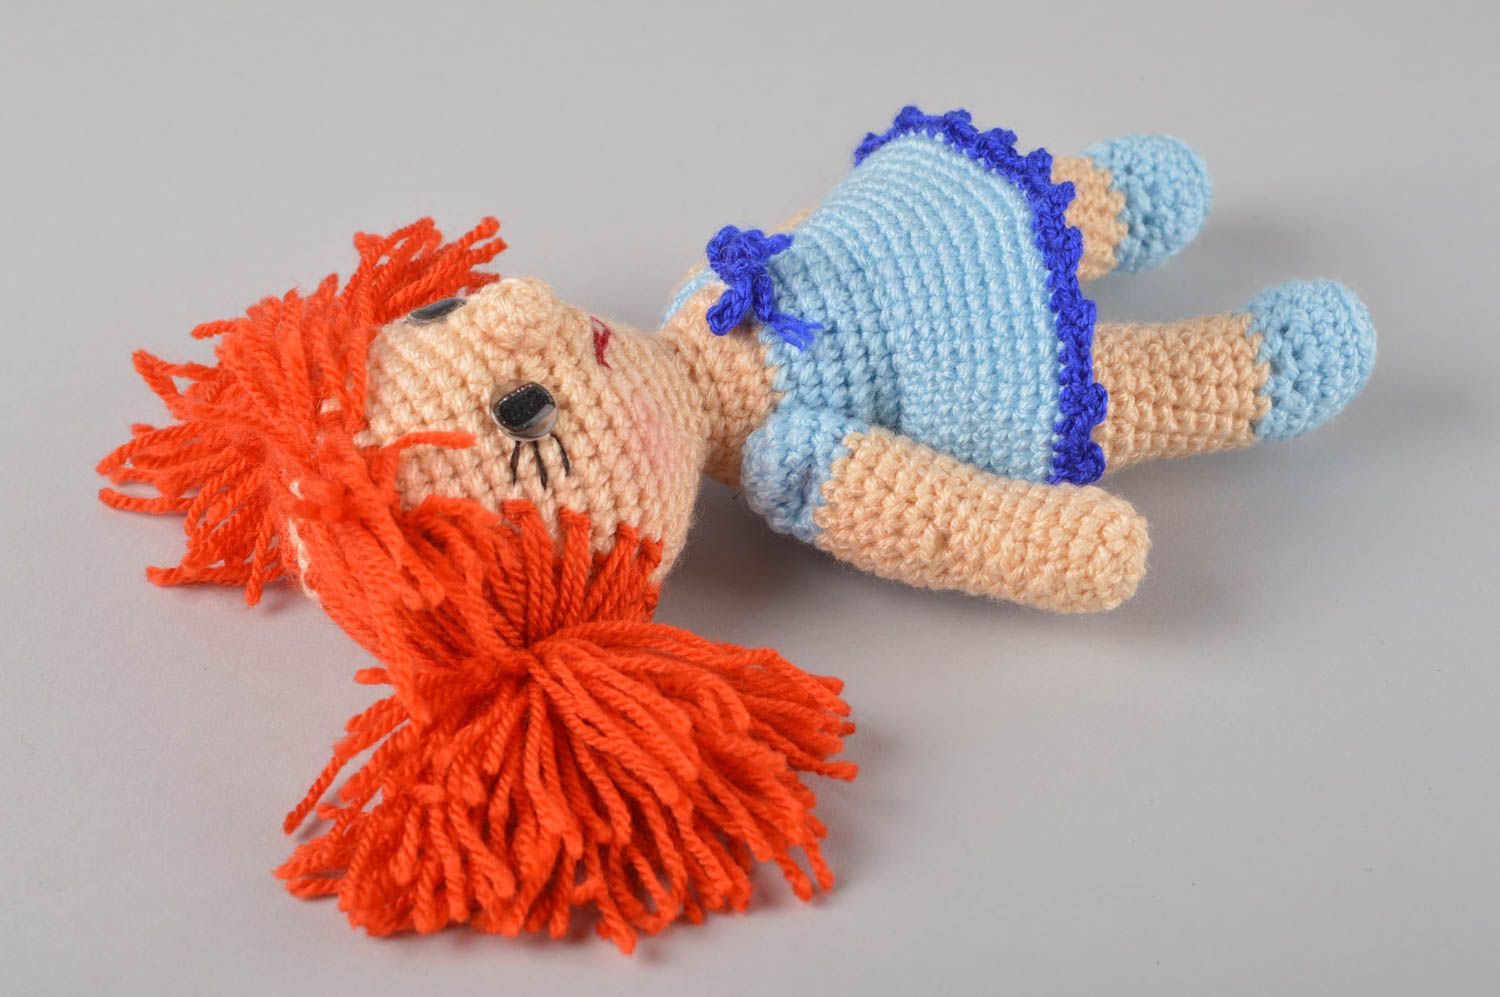 Handmade doll designer doll gift for baby crocheted doll nursery decor photo 3